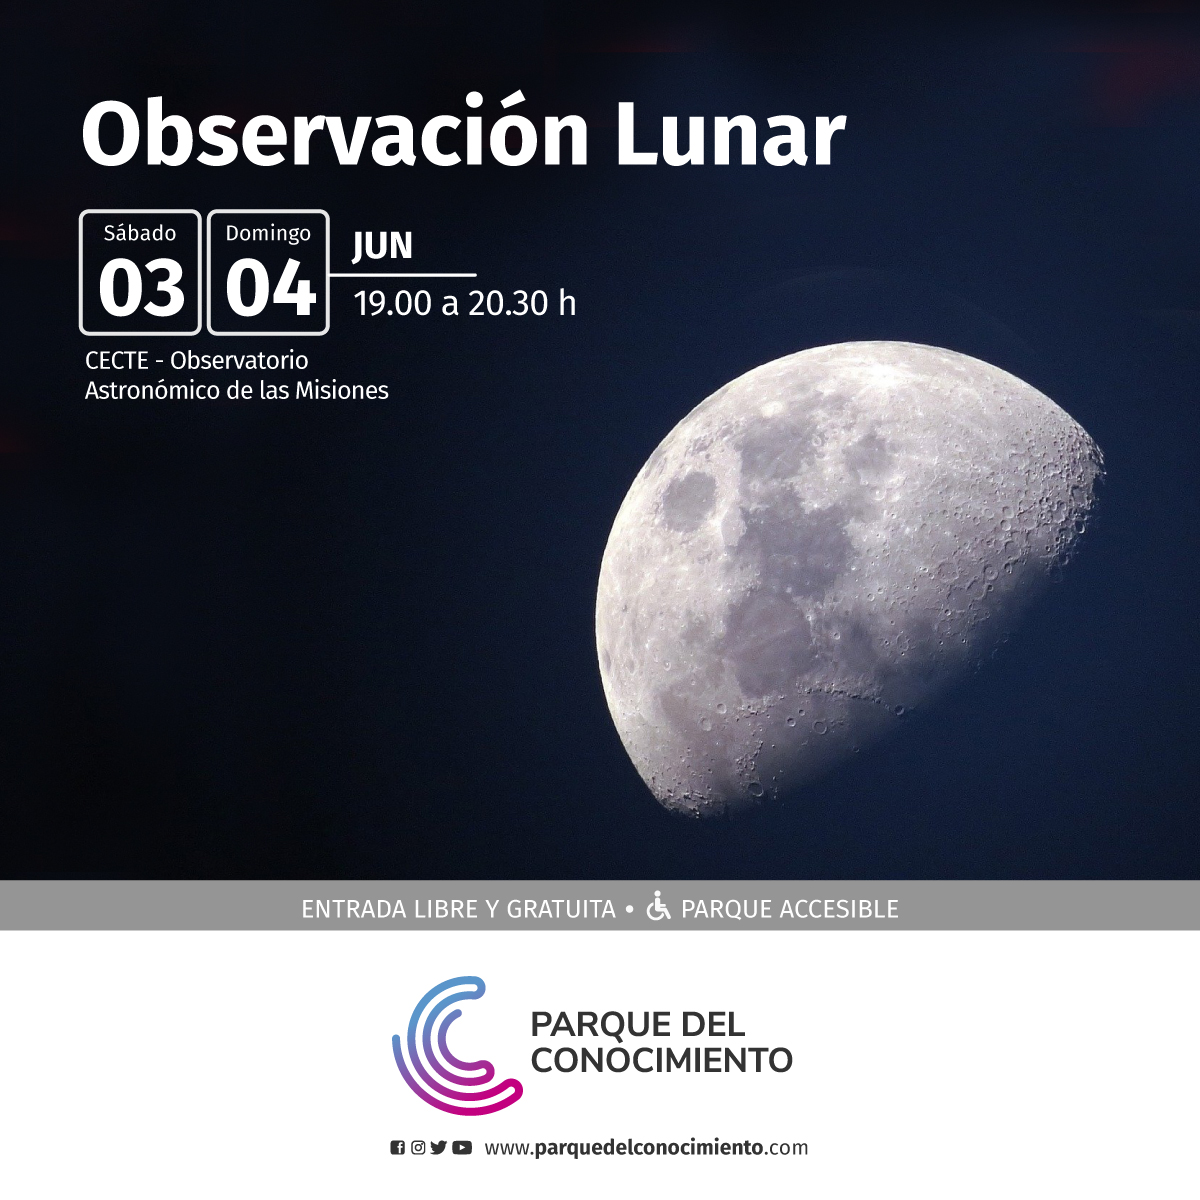 Astronomía para niños y observación lunar: este finde en el Parque